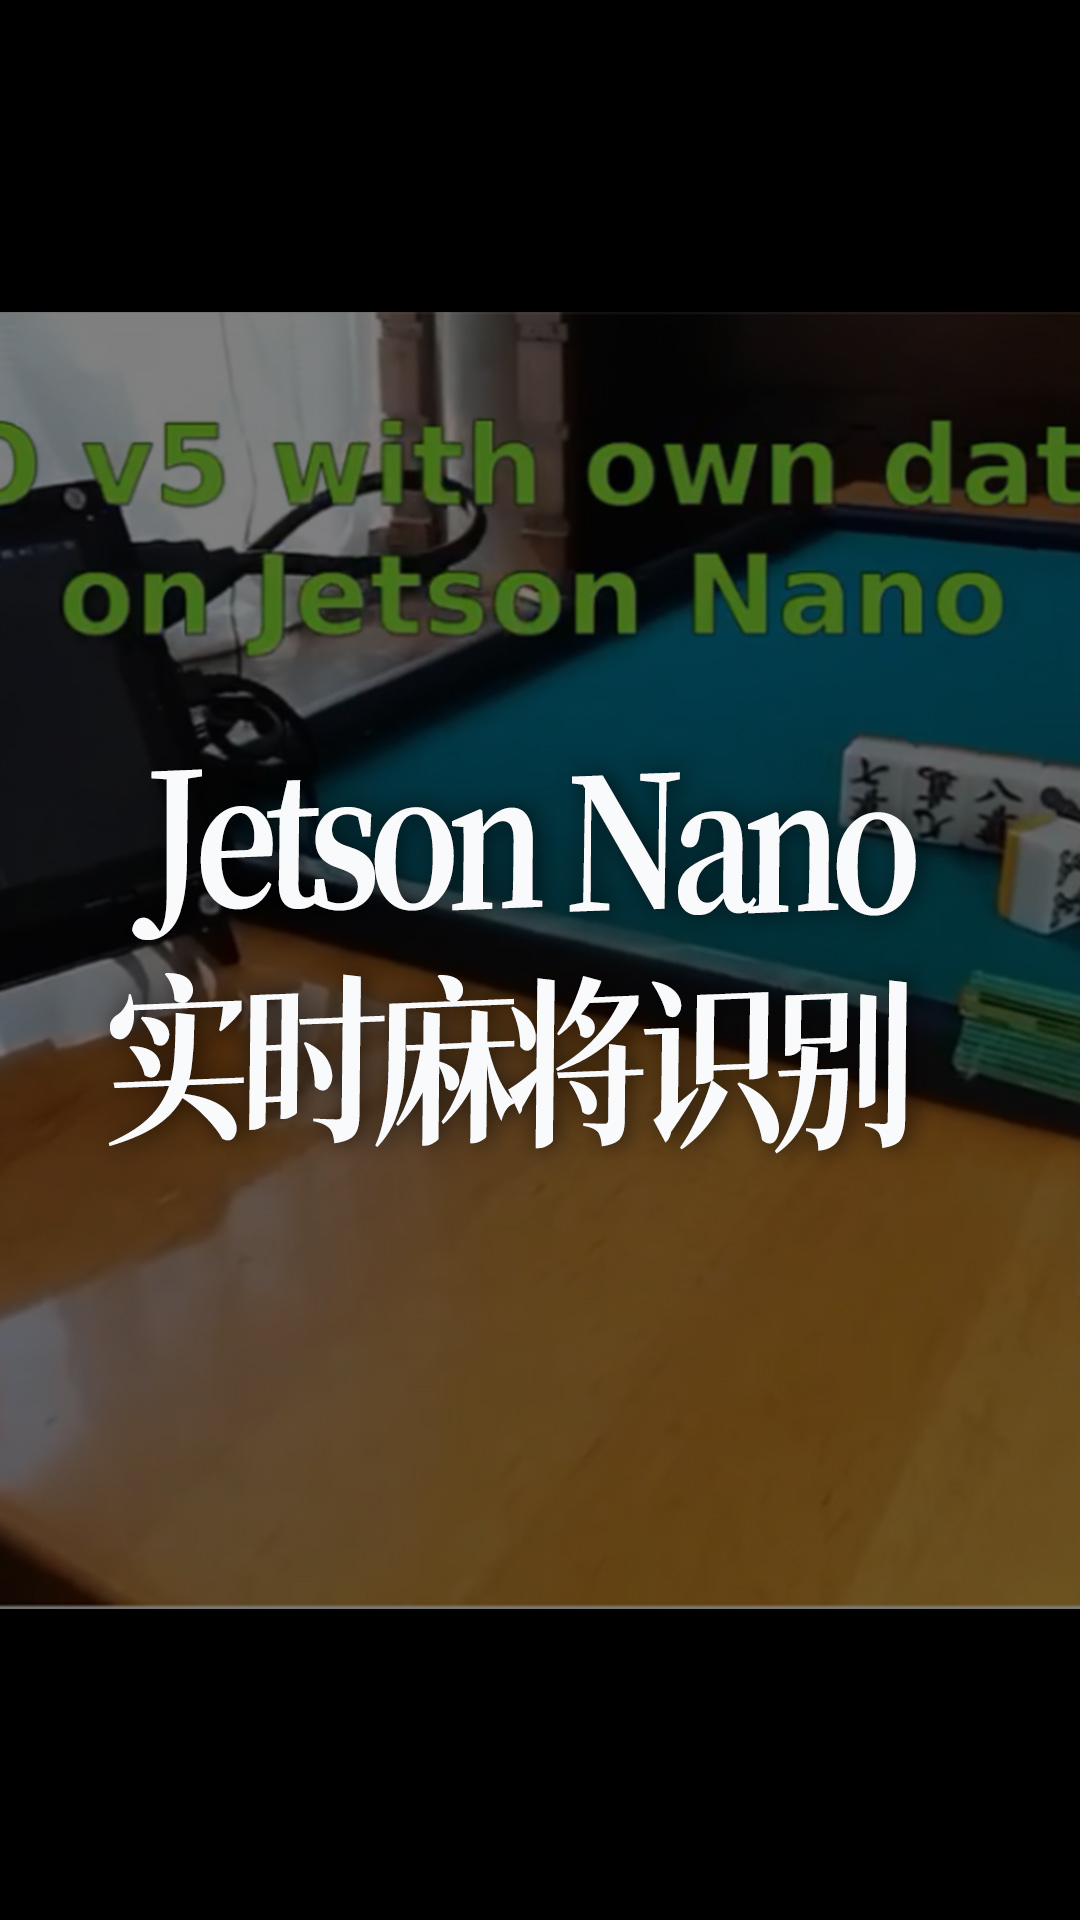 etson Nano实时麻将识别